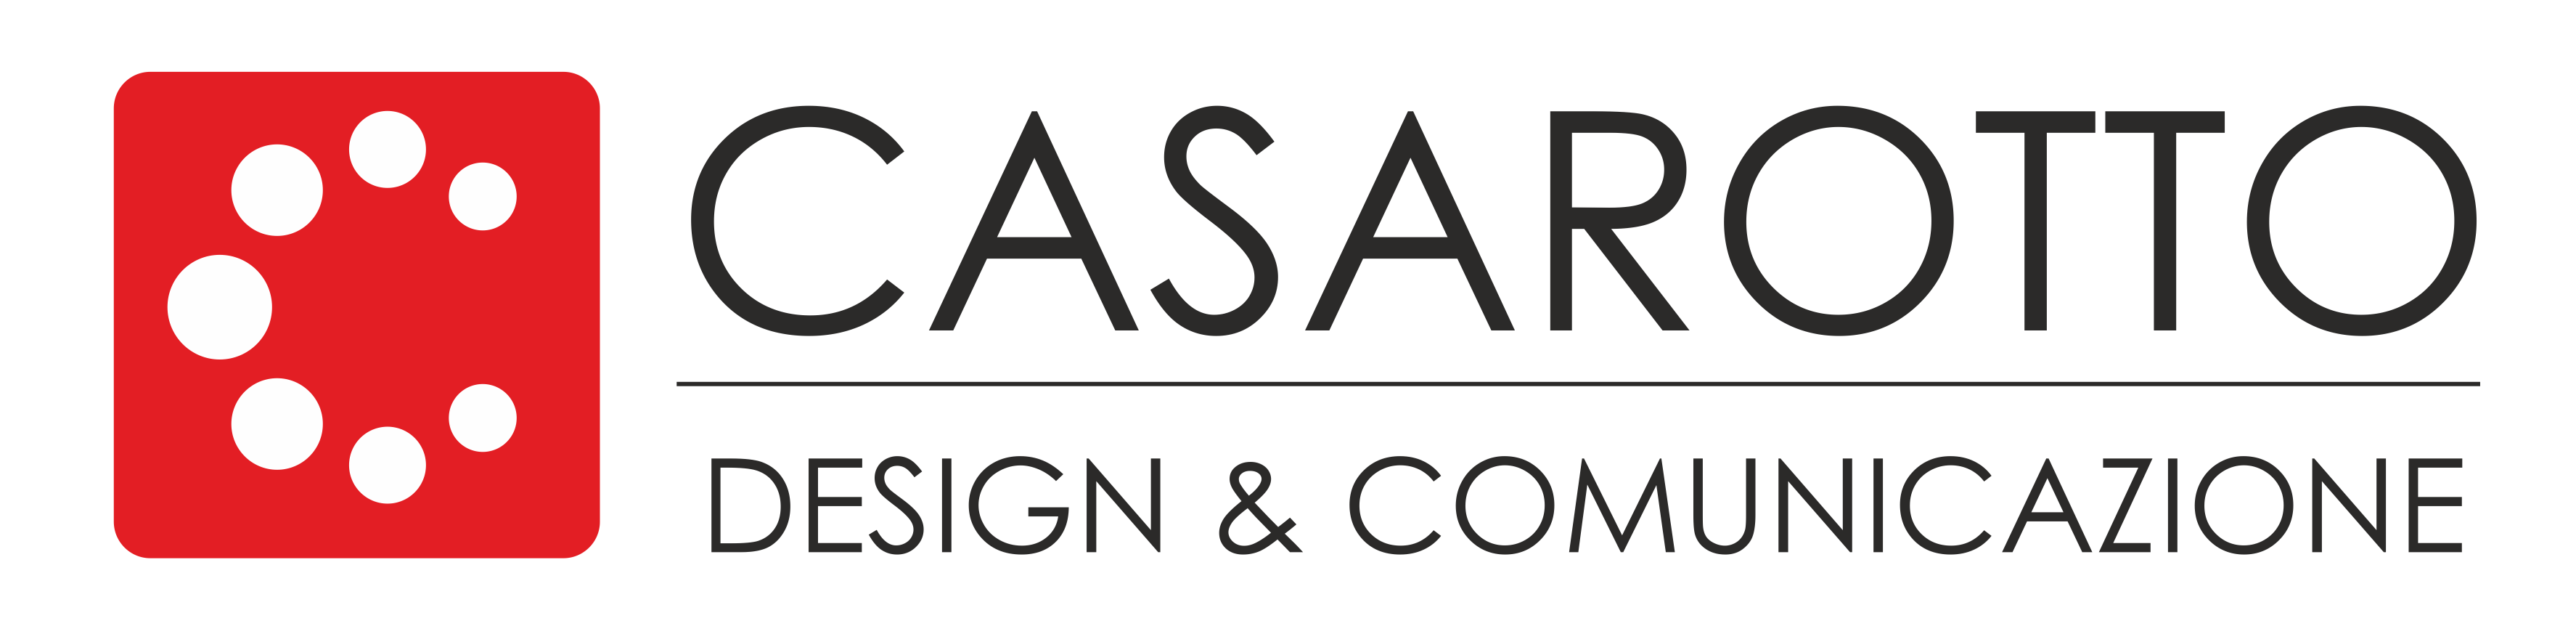 Casarotto Design